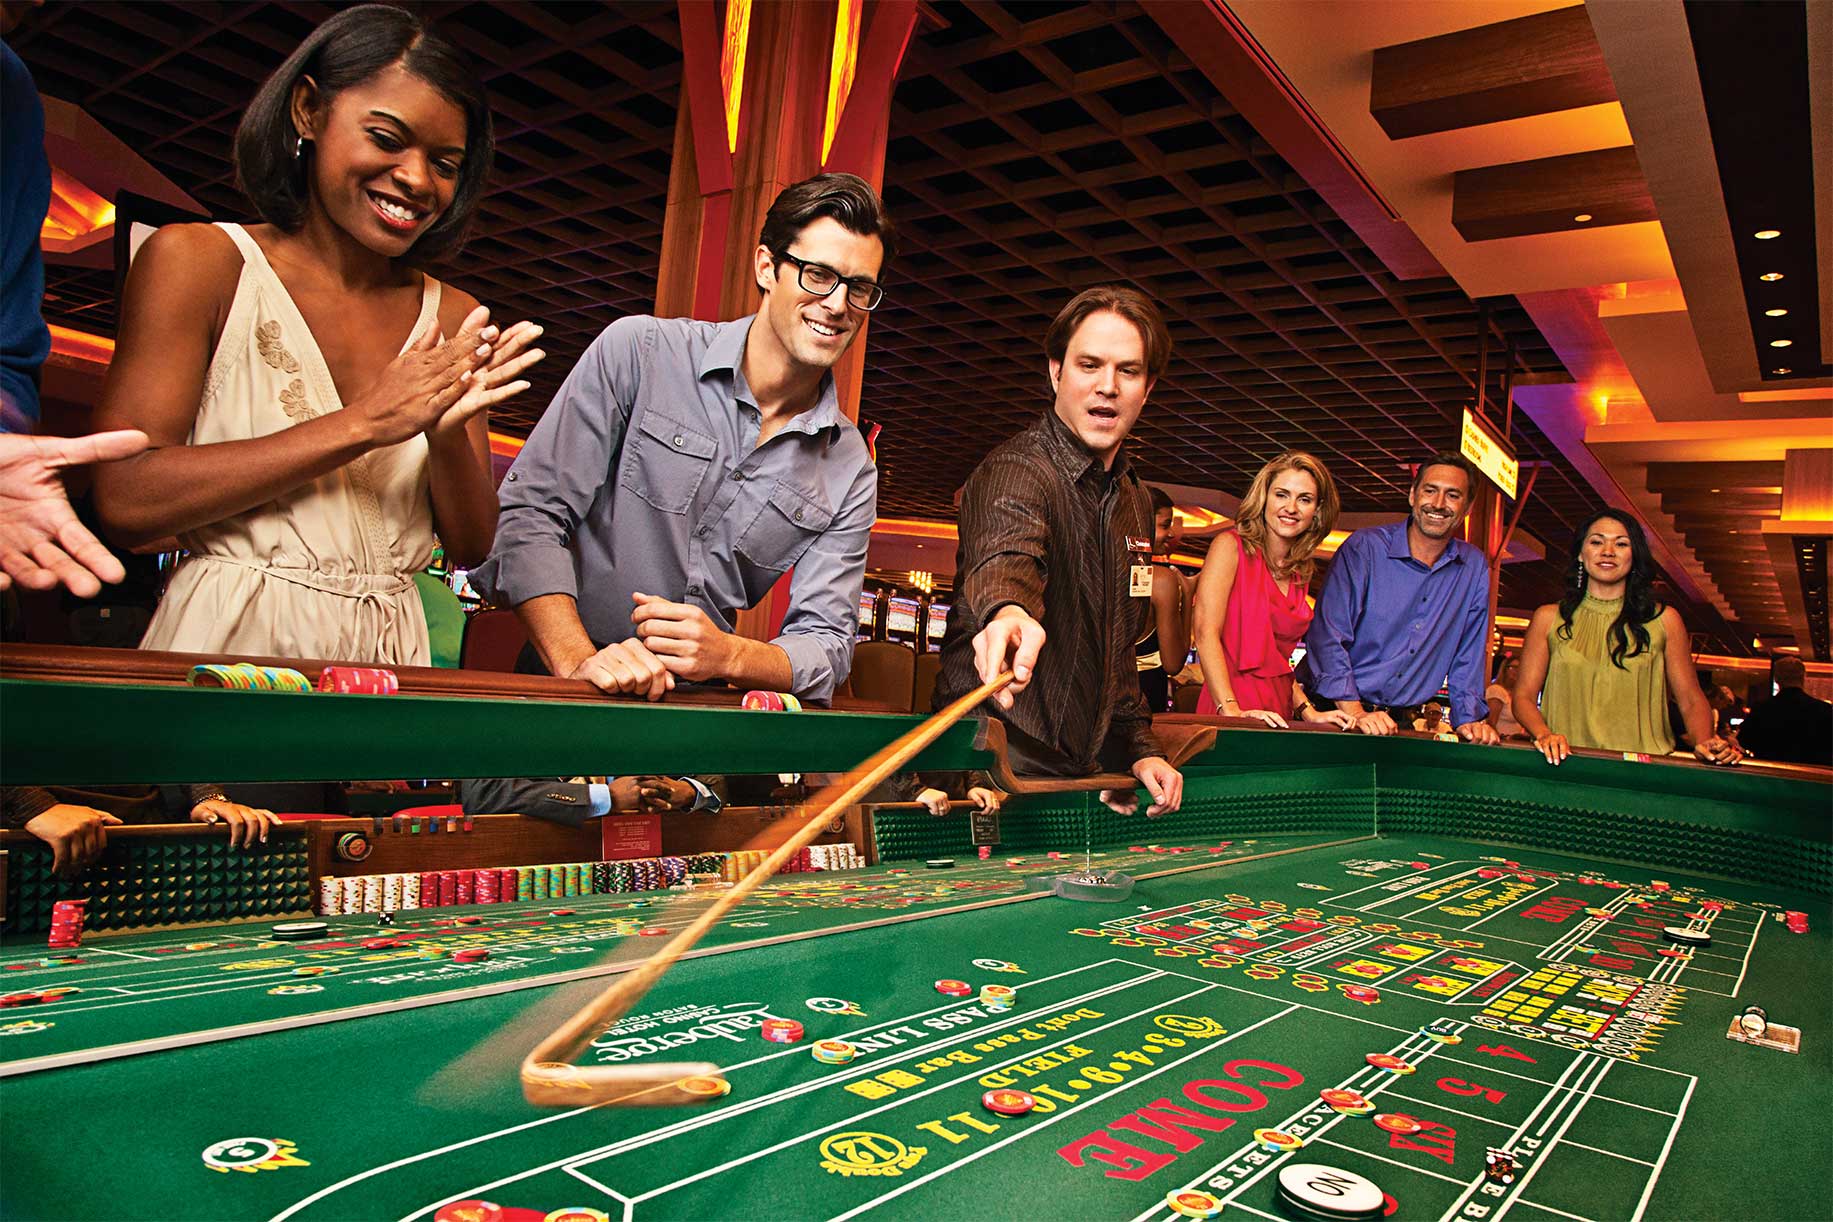 Азартная и весёлая атмосфера в казино Spin City